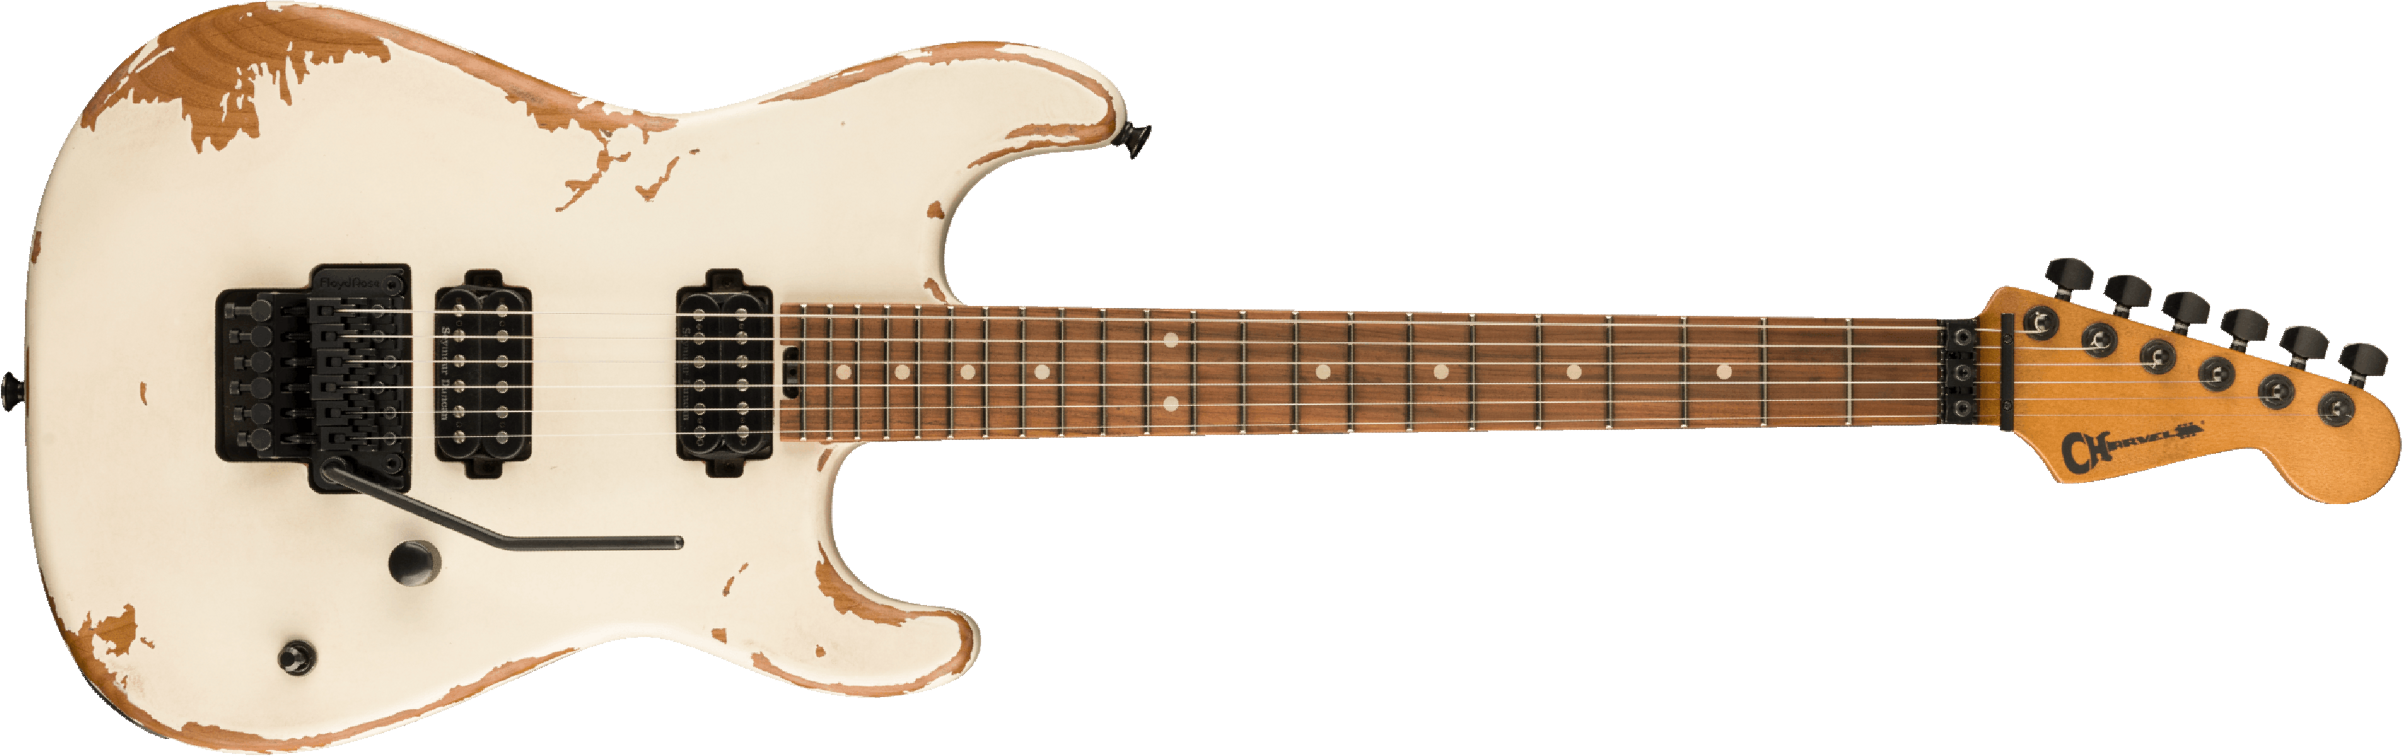 Charvel San Dimas Pro-mod Relic Style 1 Hh Fr E Pf - Weathered White - Guitare Électrique Forme Str - Main picture